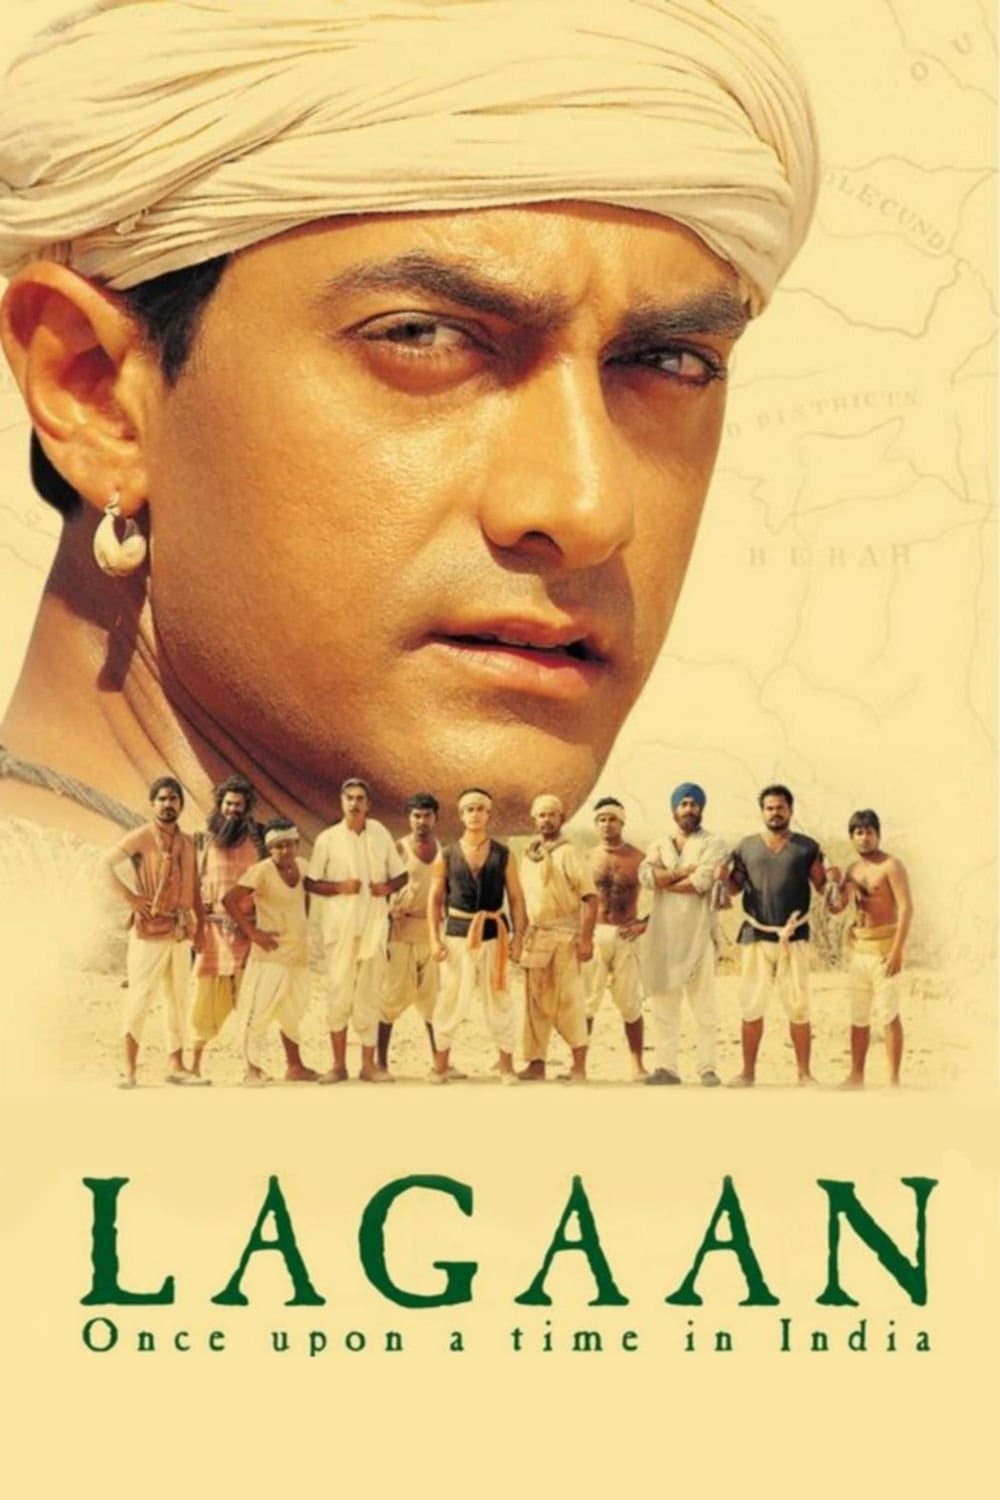 Lagaan - Es war einmal in Indien